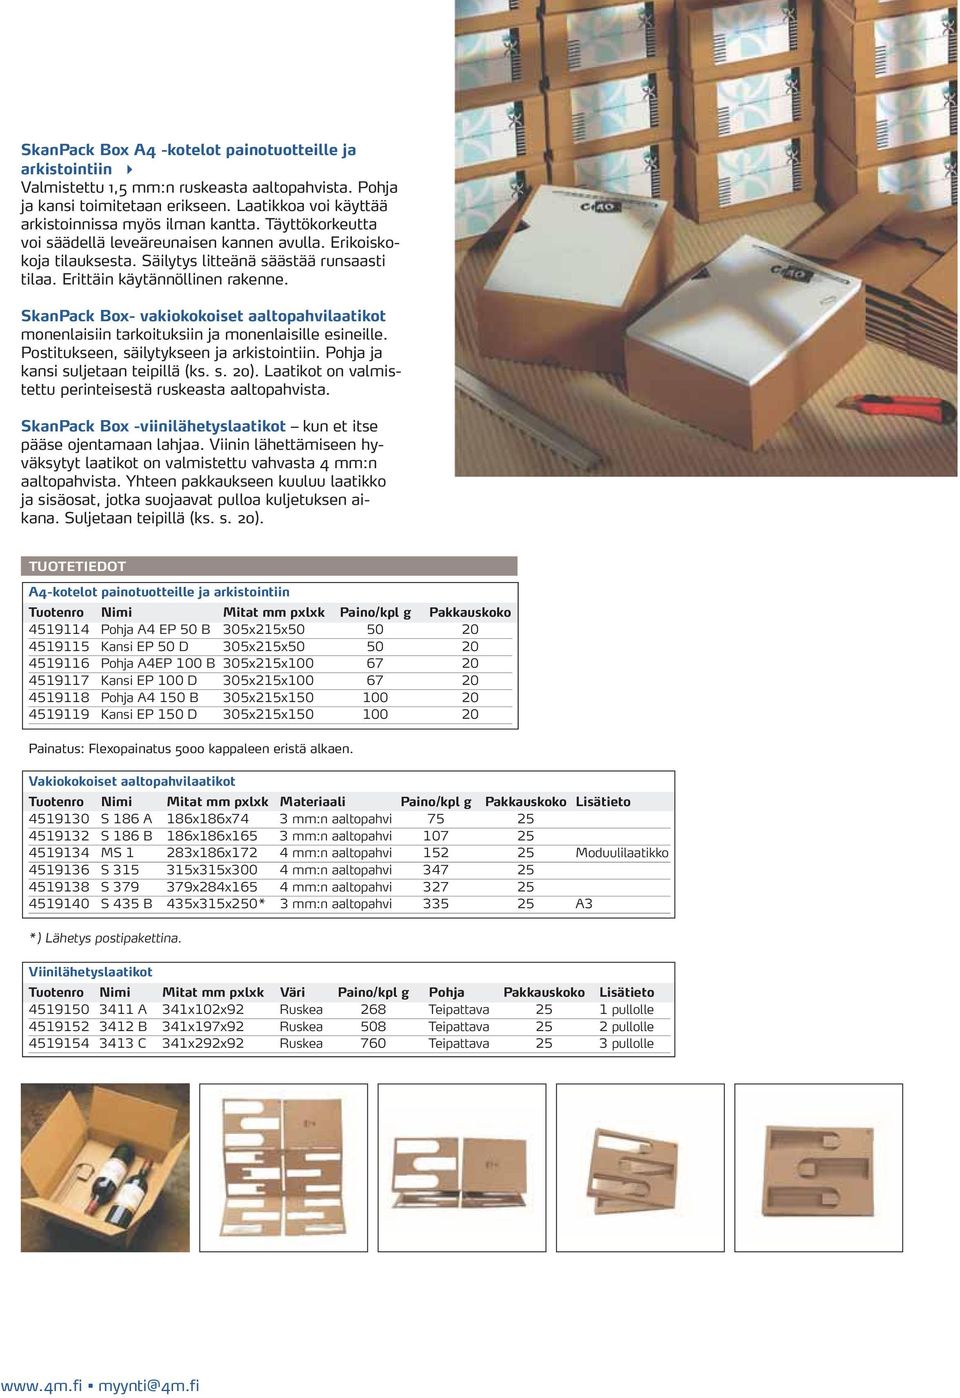 SkanPack Box- vakiokokoiset aaltopahvilaatikot monenlaisiin tarkoituksiin ja monenlaisille esineille. Postitukseen, säilytykseen ja arkistointiin. Pohja ja kansi suljetaan teipillä (ks. s. 20).